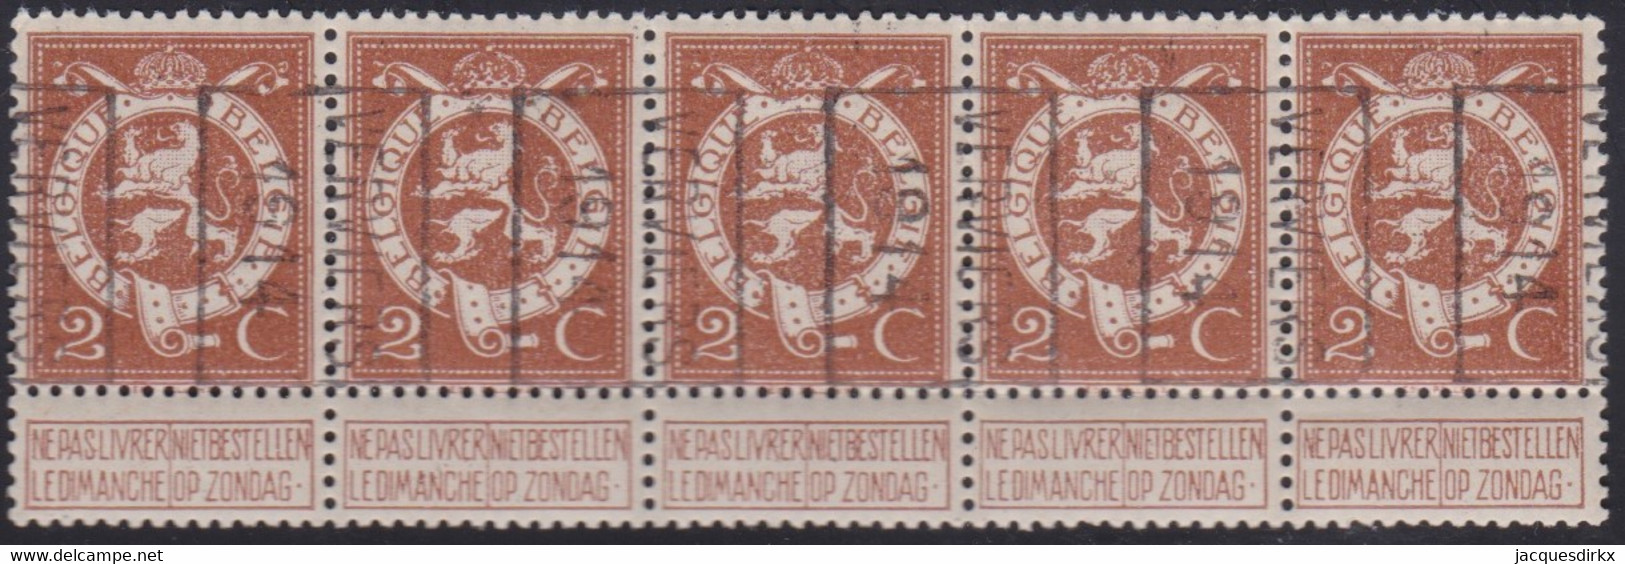 Belgie   .  OBP   .   Strook 5 Zegels 2381   (2 Paren)      .     **   .     Postfris  . / .   Neuf SANS Charniére - Rollo De Sellos 1910-19